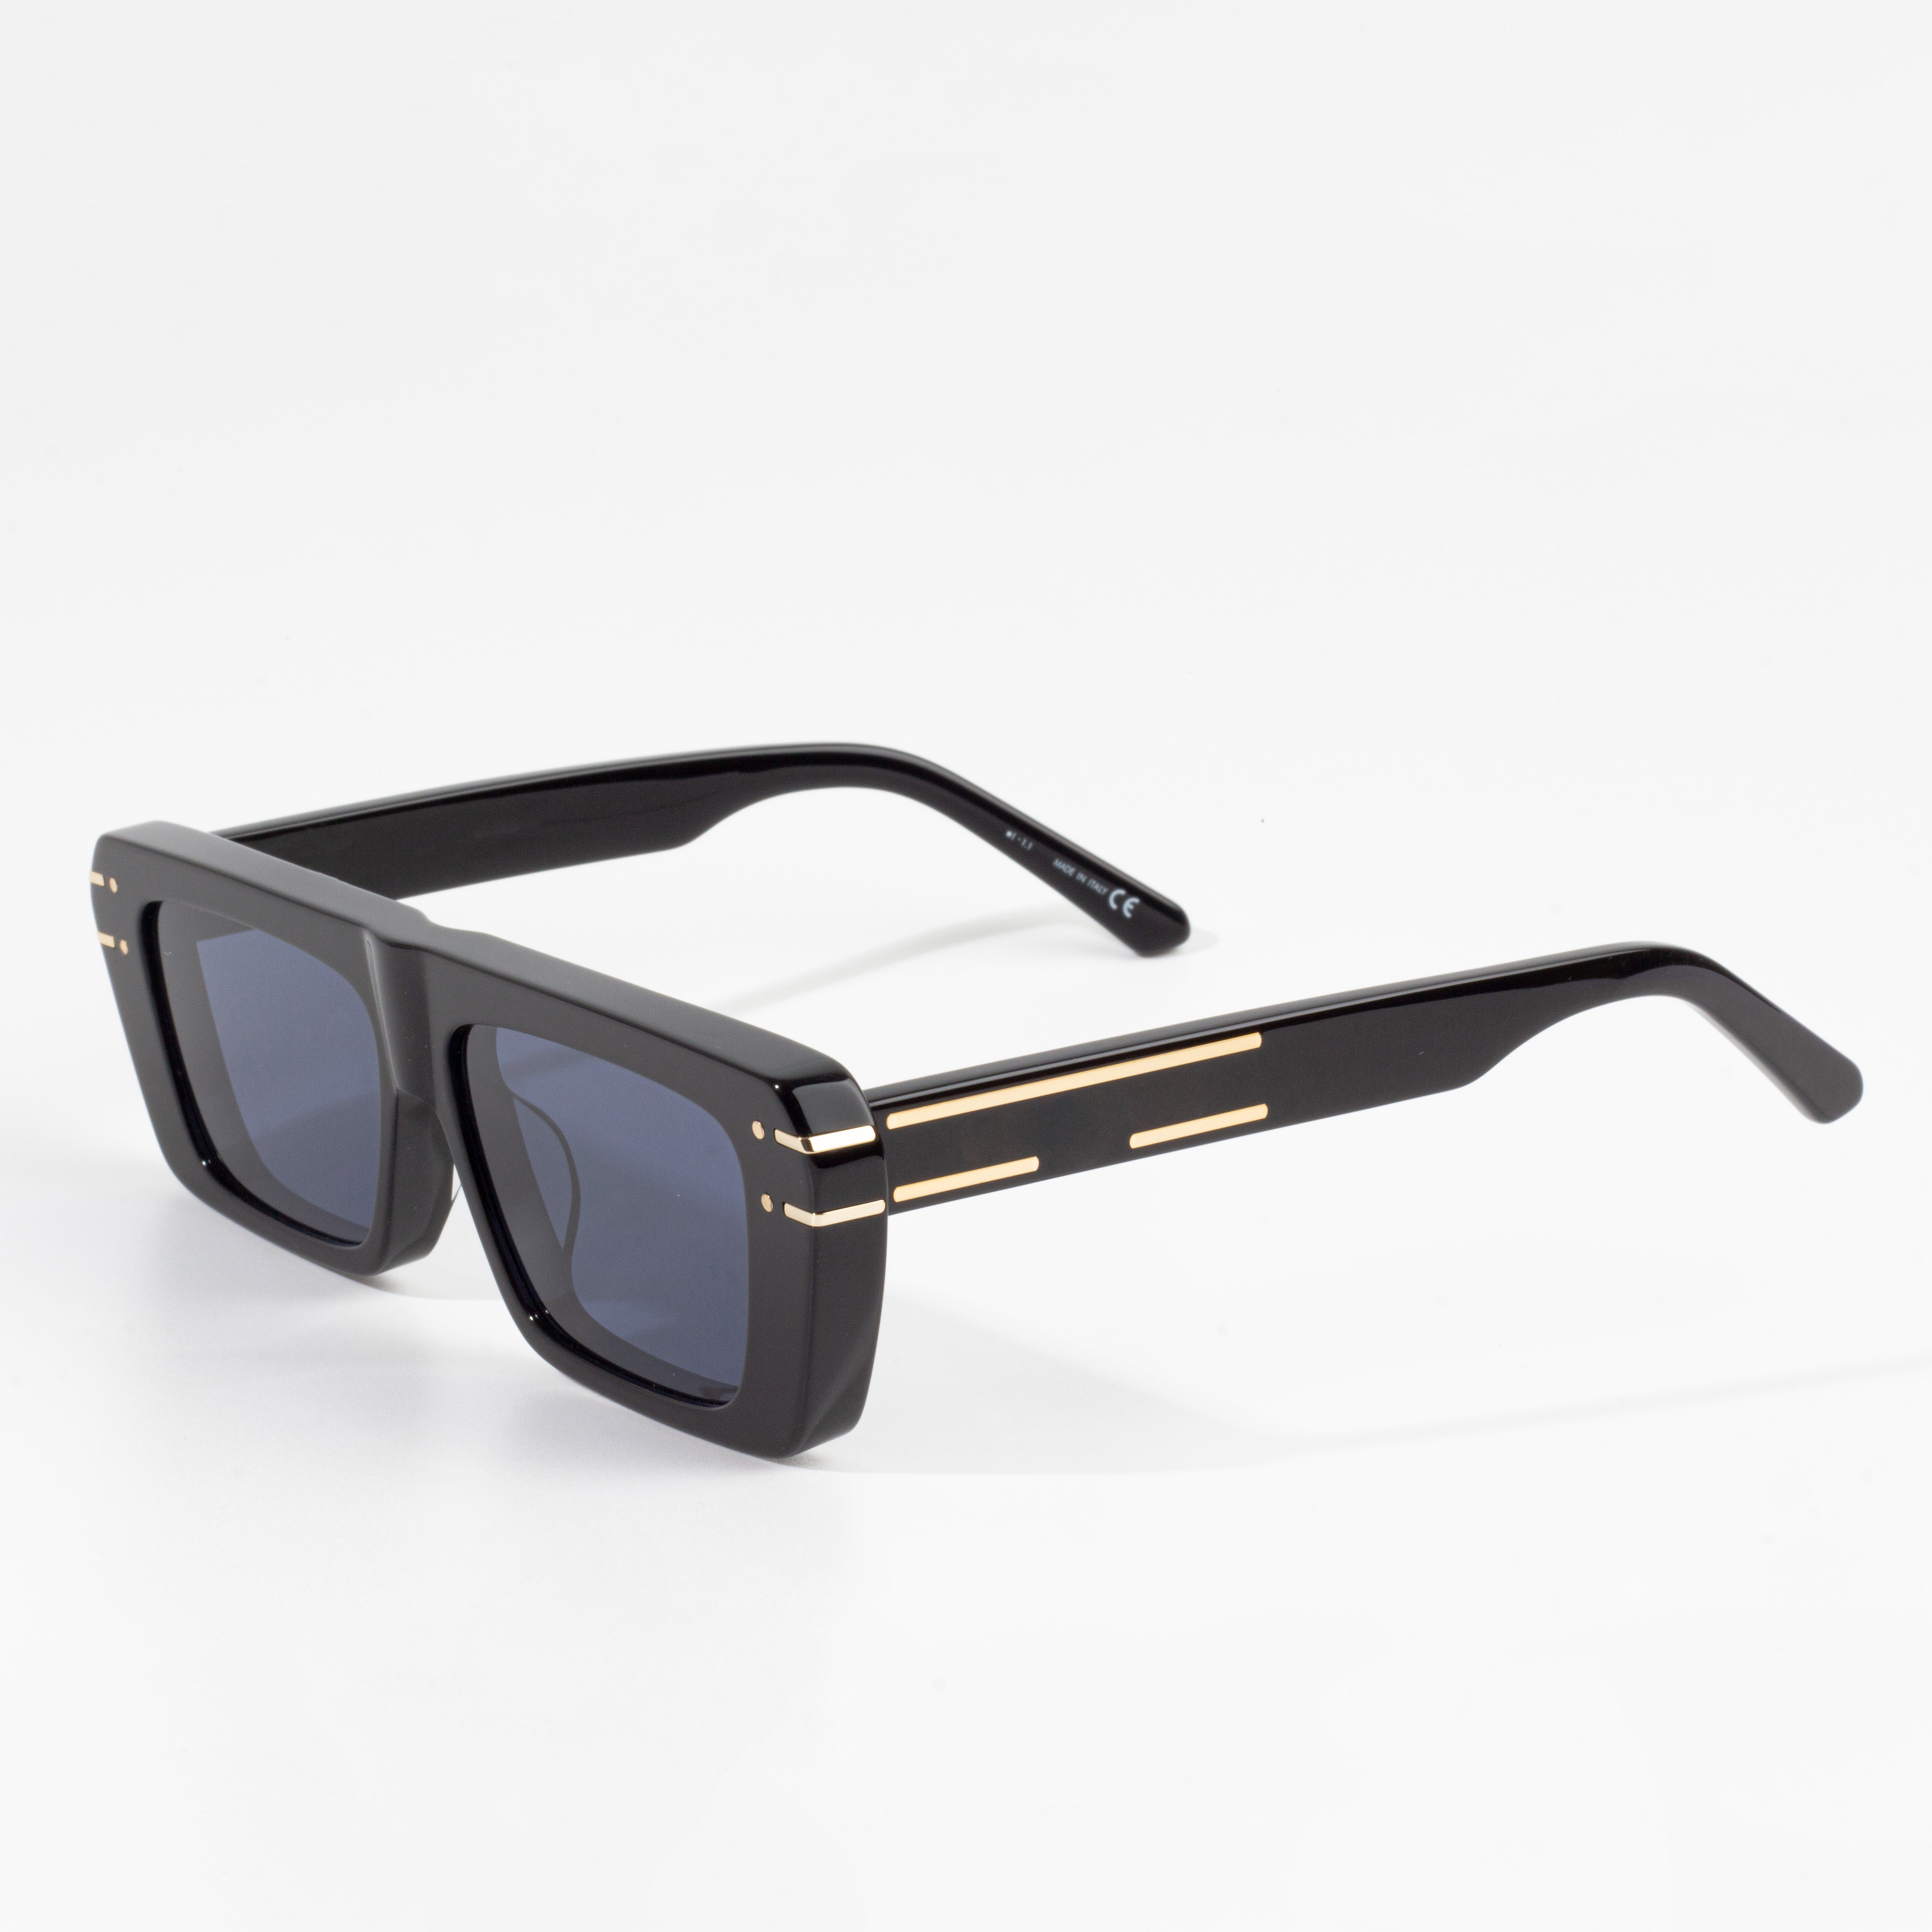 2022 New Style Woman Sunglasses - women brand sunglasses wholesale – HJ EYEWEAR